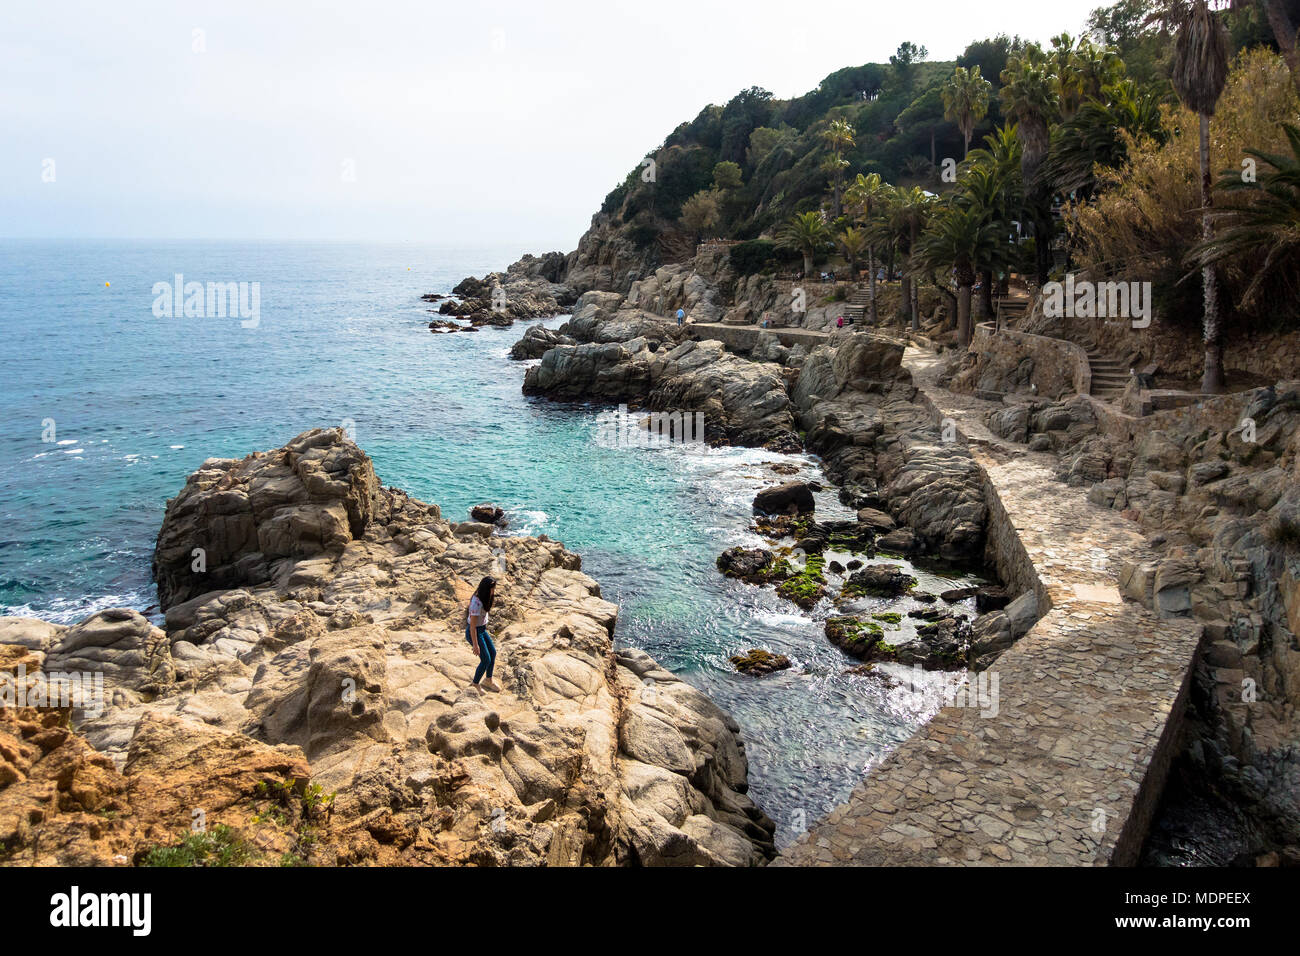 Una parte rocciosa della costa a Lloret de Mar in Costa Brava regione della Spagna. Foto Stock